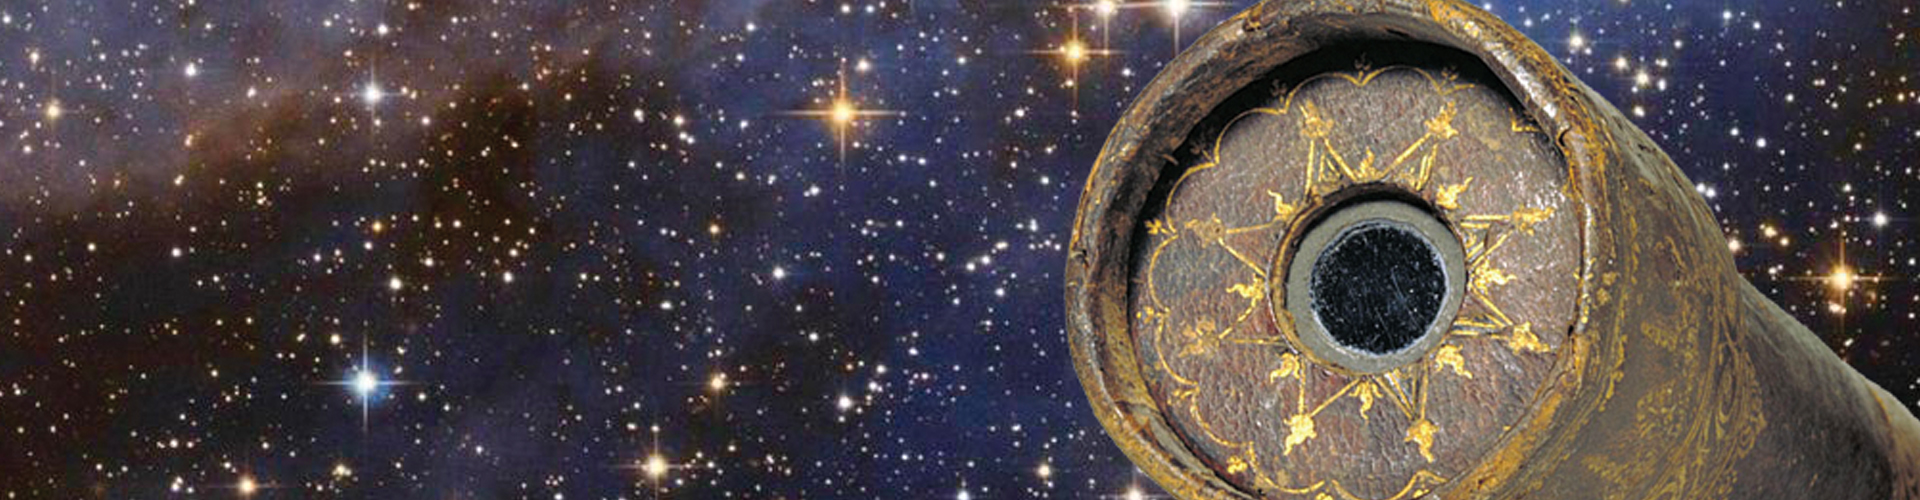 La meravigliosa imperfezione dell’Universo da Galileo Galilei a Primo Levi